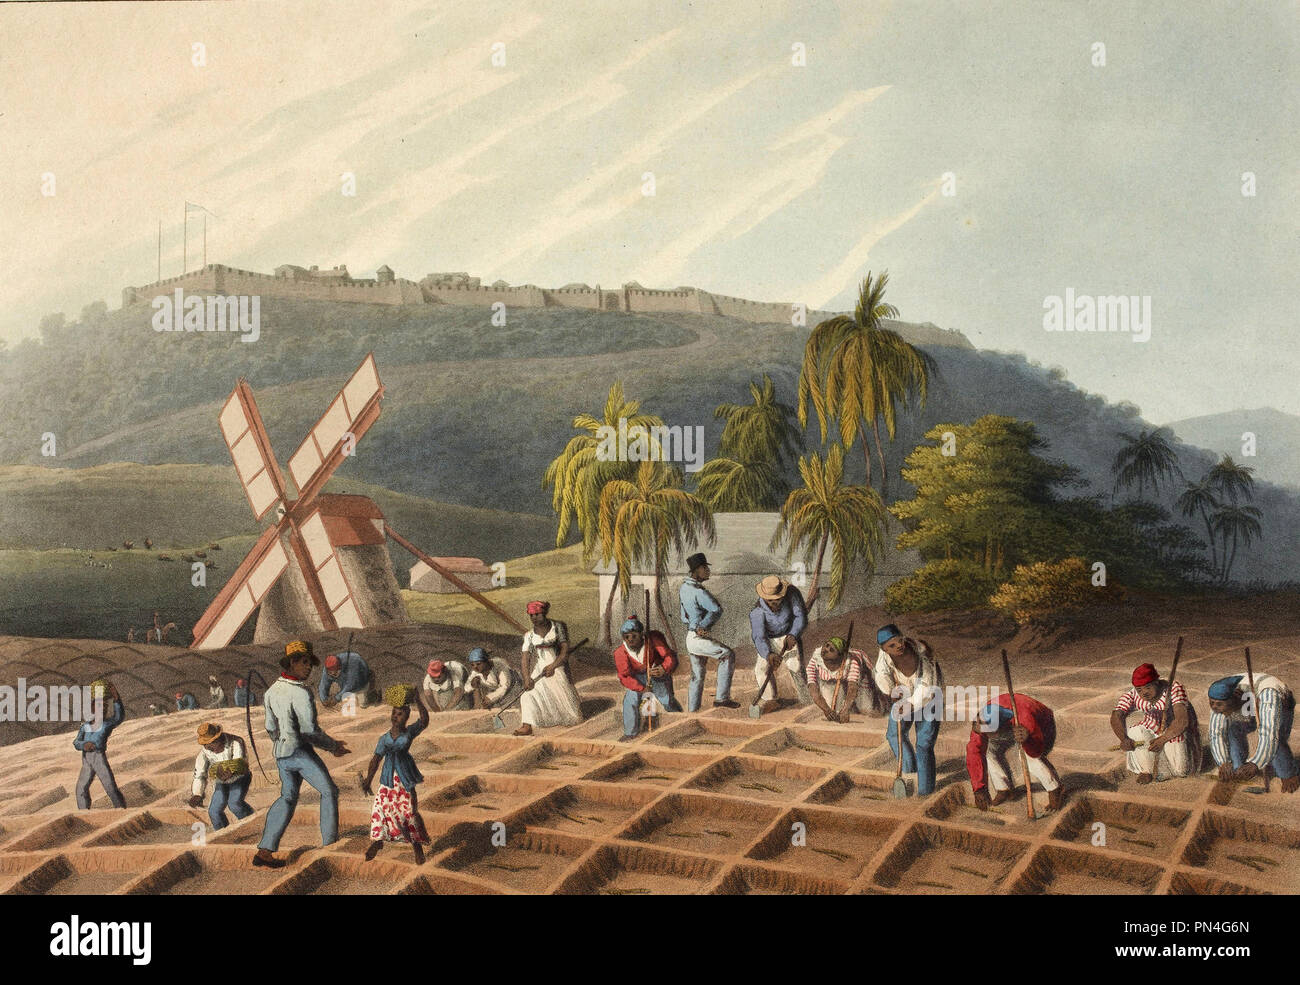 Esclavos que trabajaban en una plantación: plantar la caña de azúcar. Circa 1823 - William Clark Foto de stock